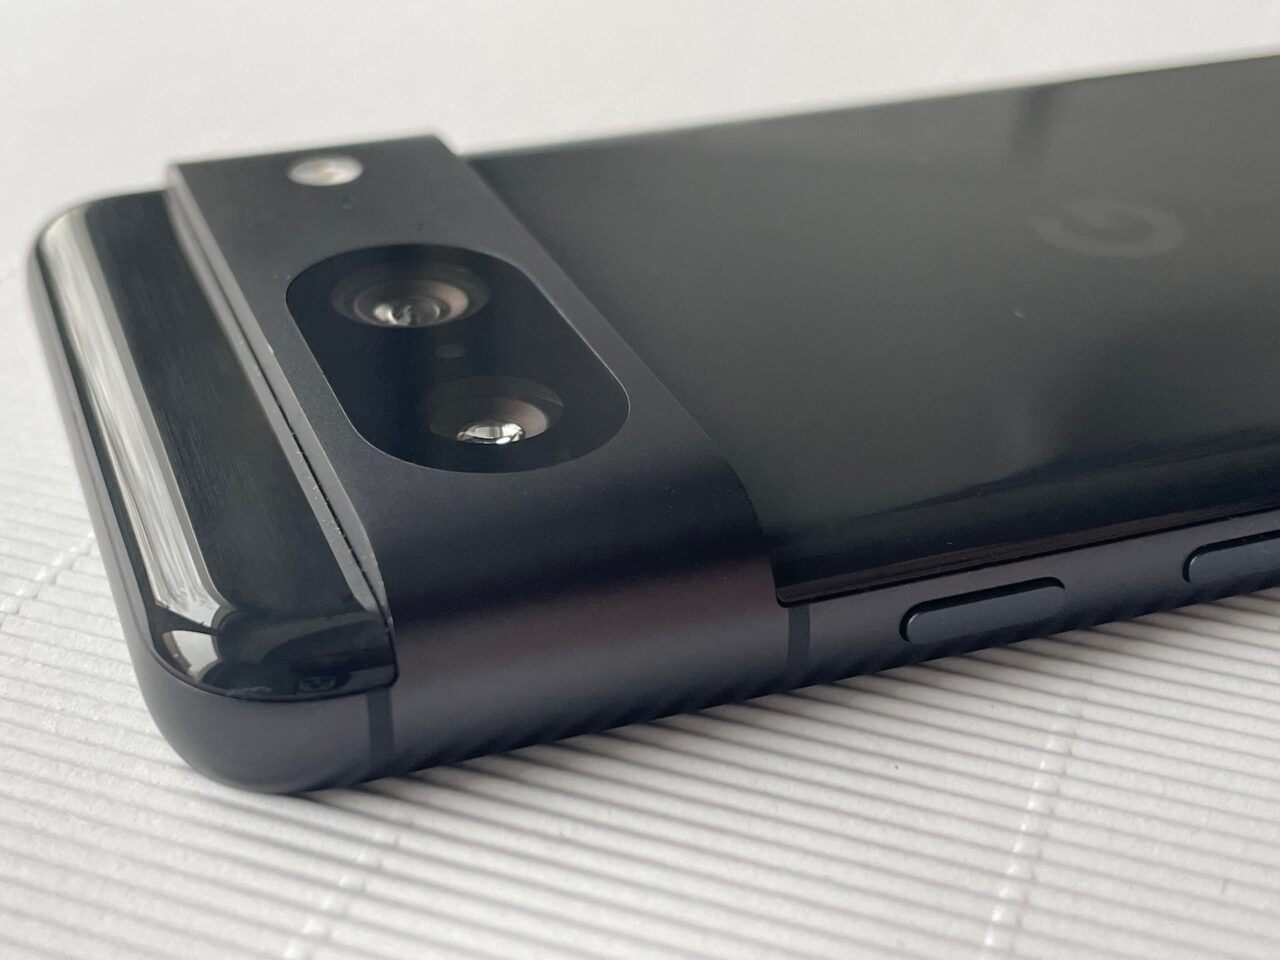 Smartfon leżący na białej powierzchni z szczegółowym widokiem na tylny aparat fotograficzny i przyciski boczne.